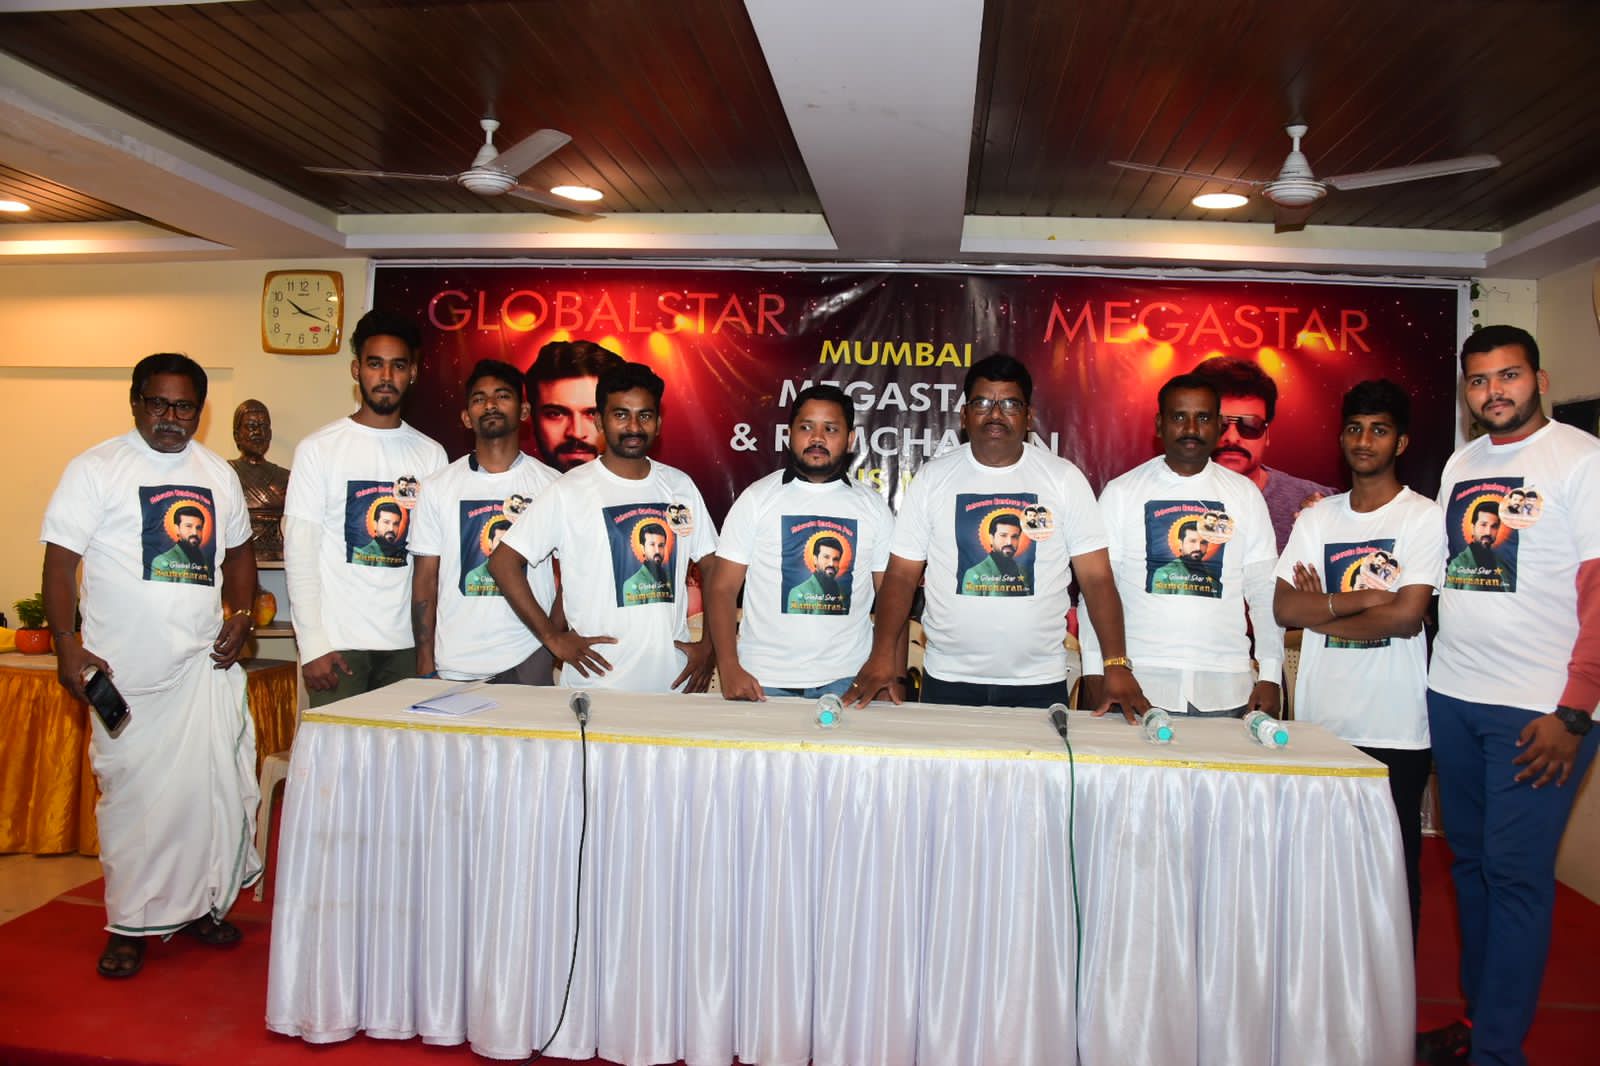 Mumbai Ram Charan fans conduct service program for 9000 members